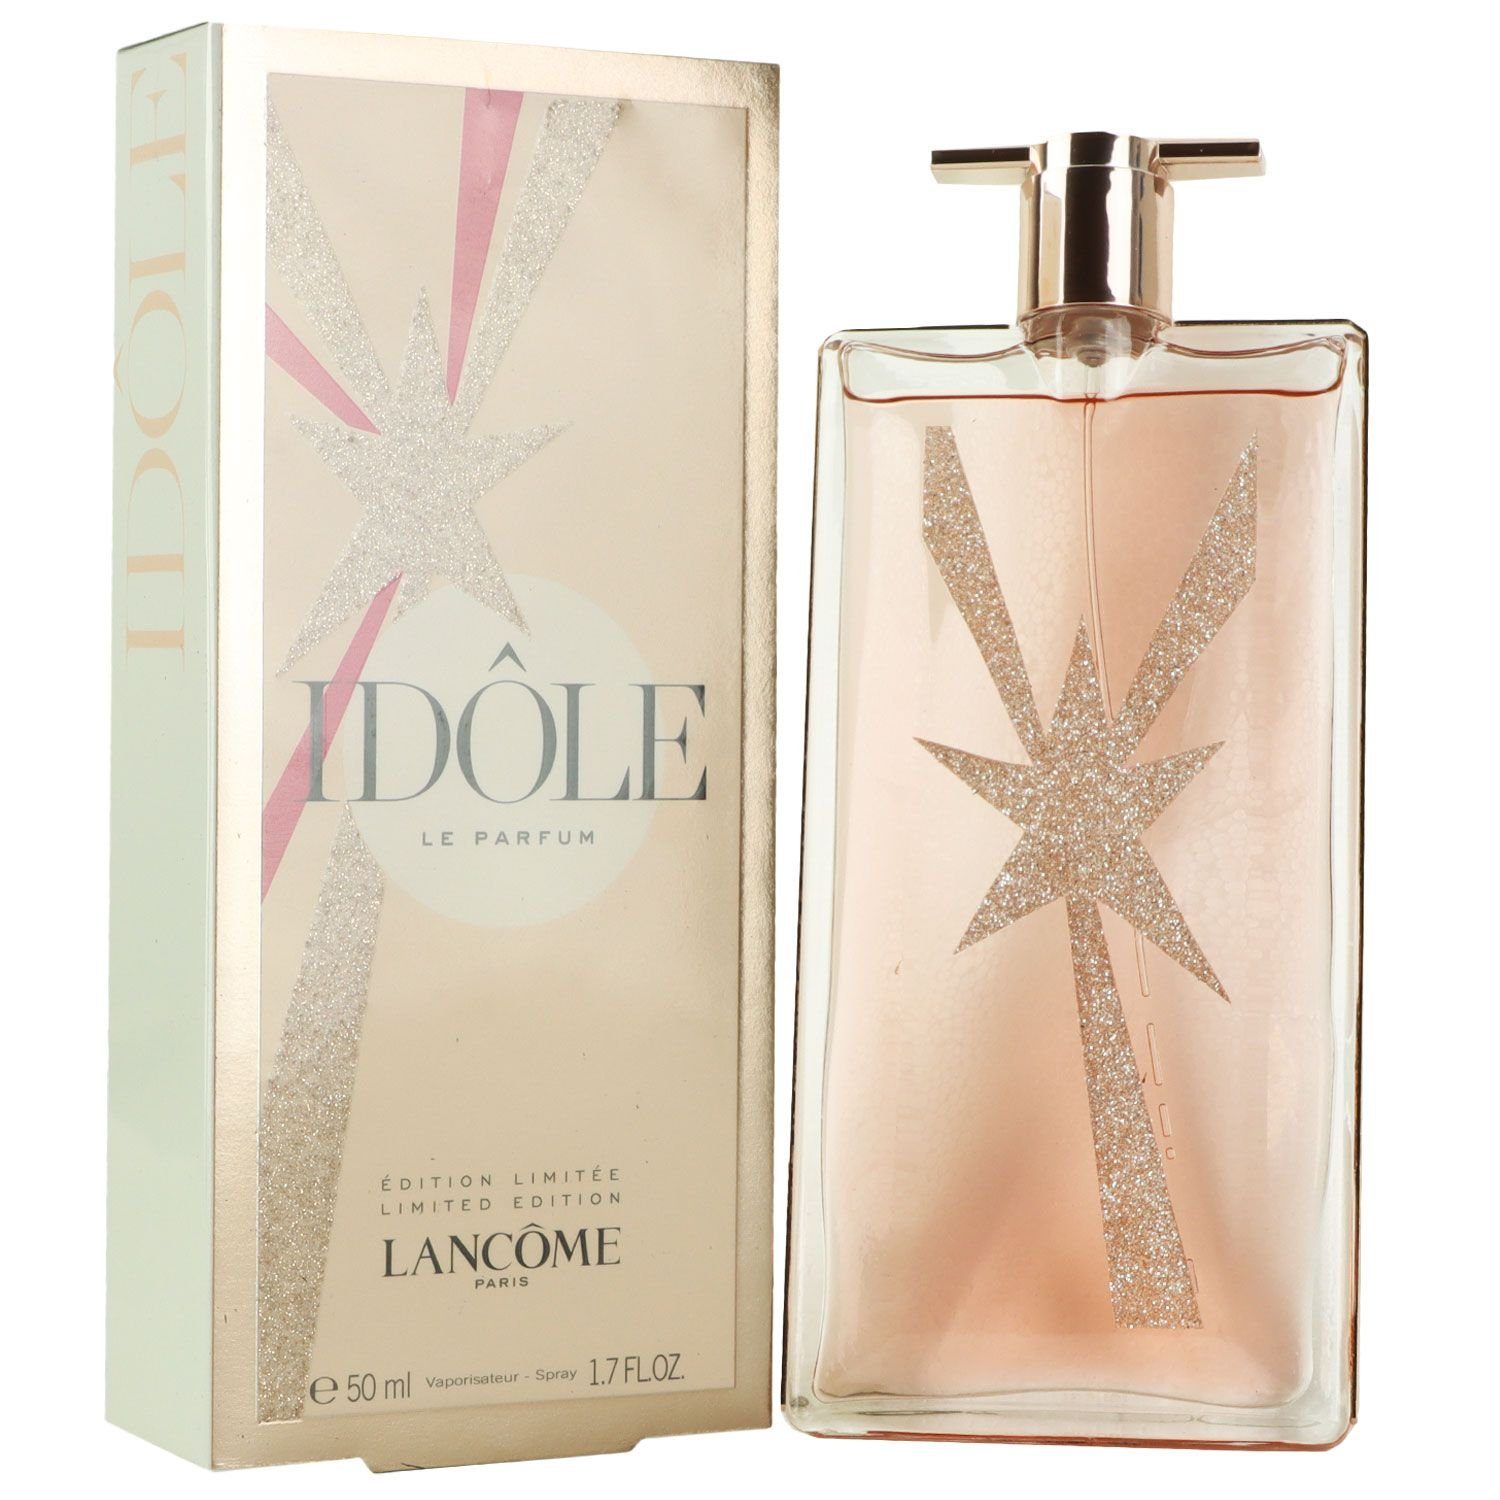 LANCOME Eau de Parfum Idole 50 ml Limited Edition